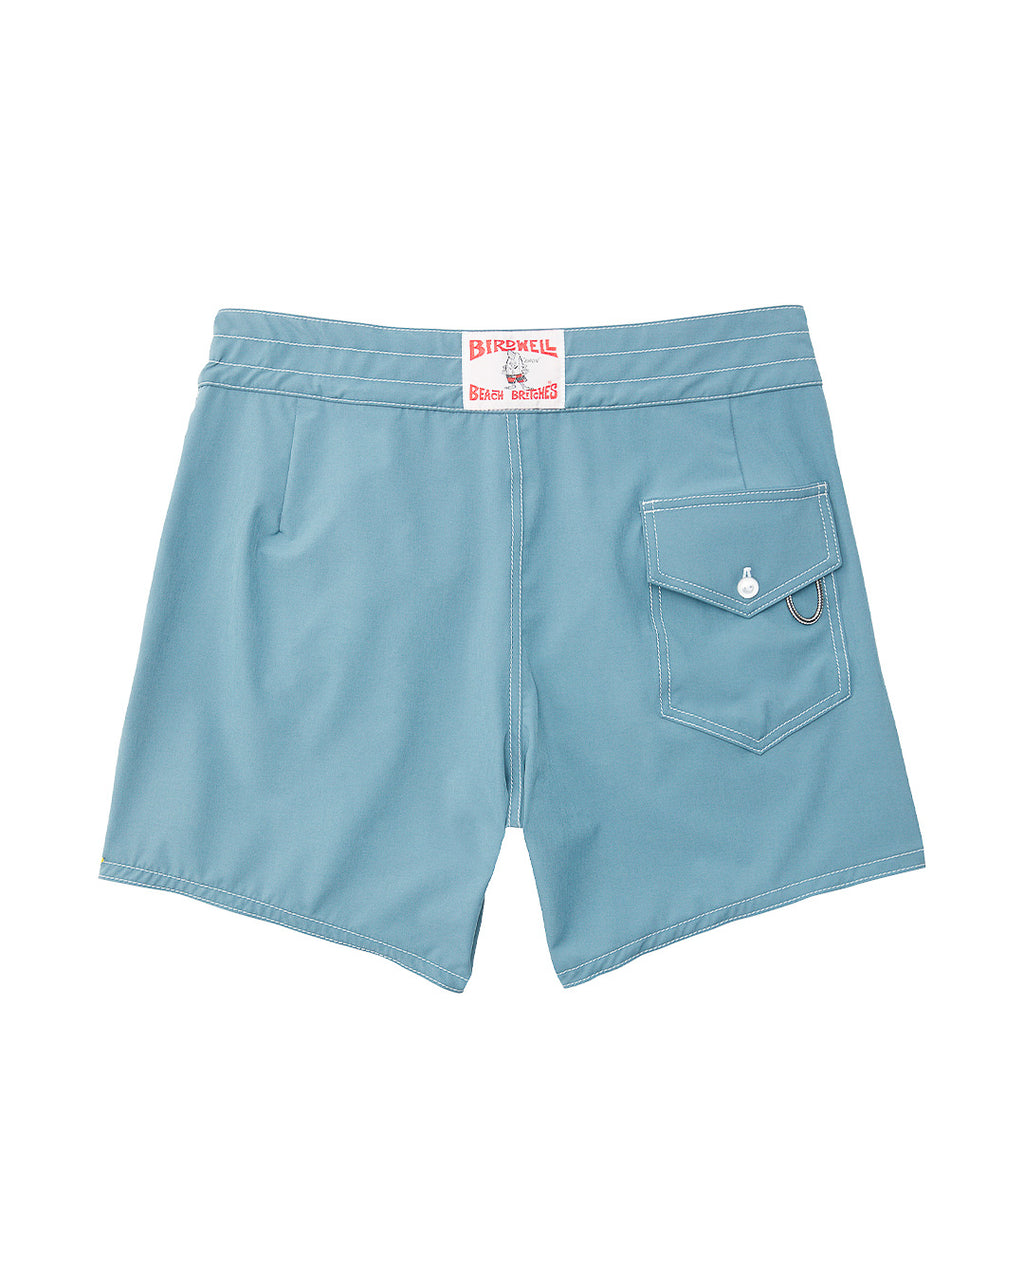 807 Board Shorts - Federal Blue | Birdwell Beach Britches